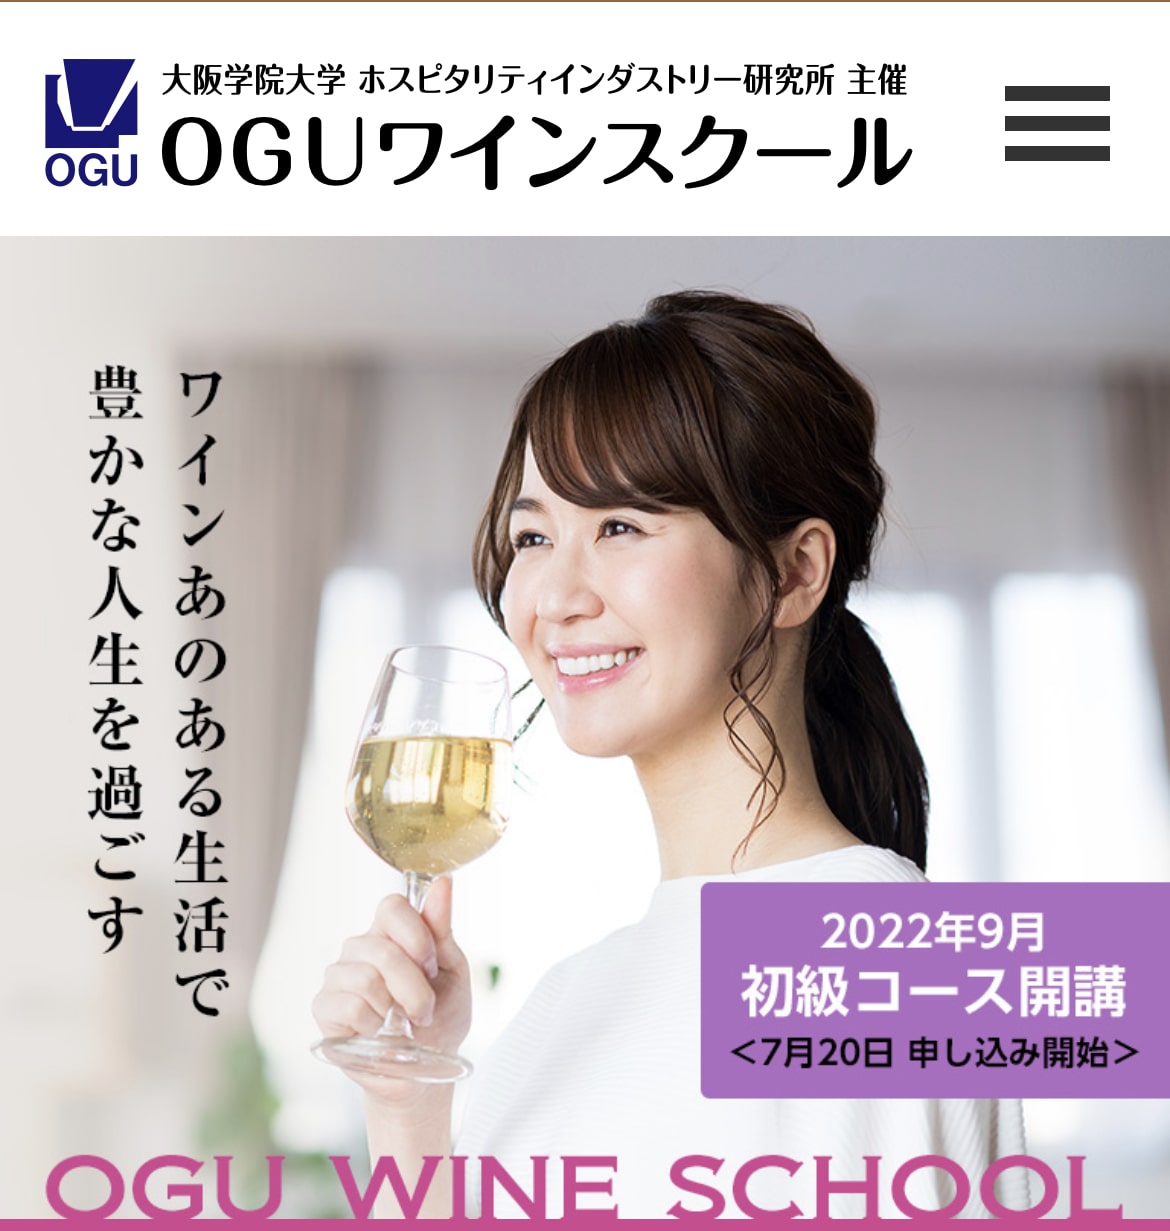 OGUワインスクール 公式サイト